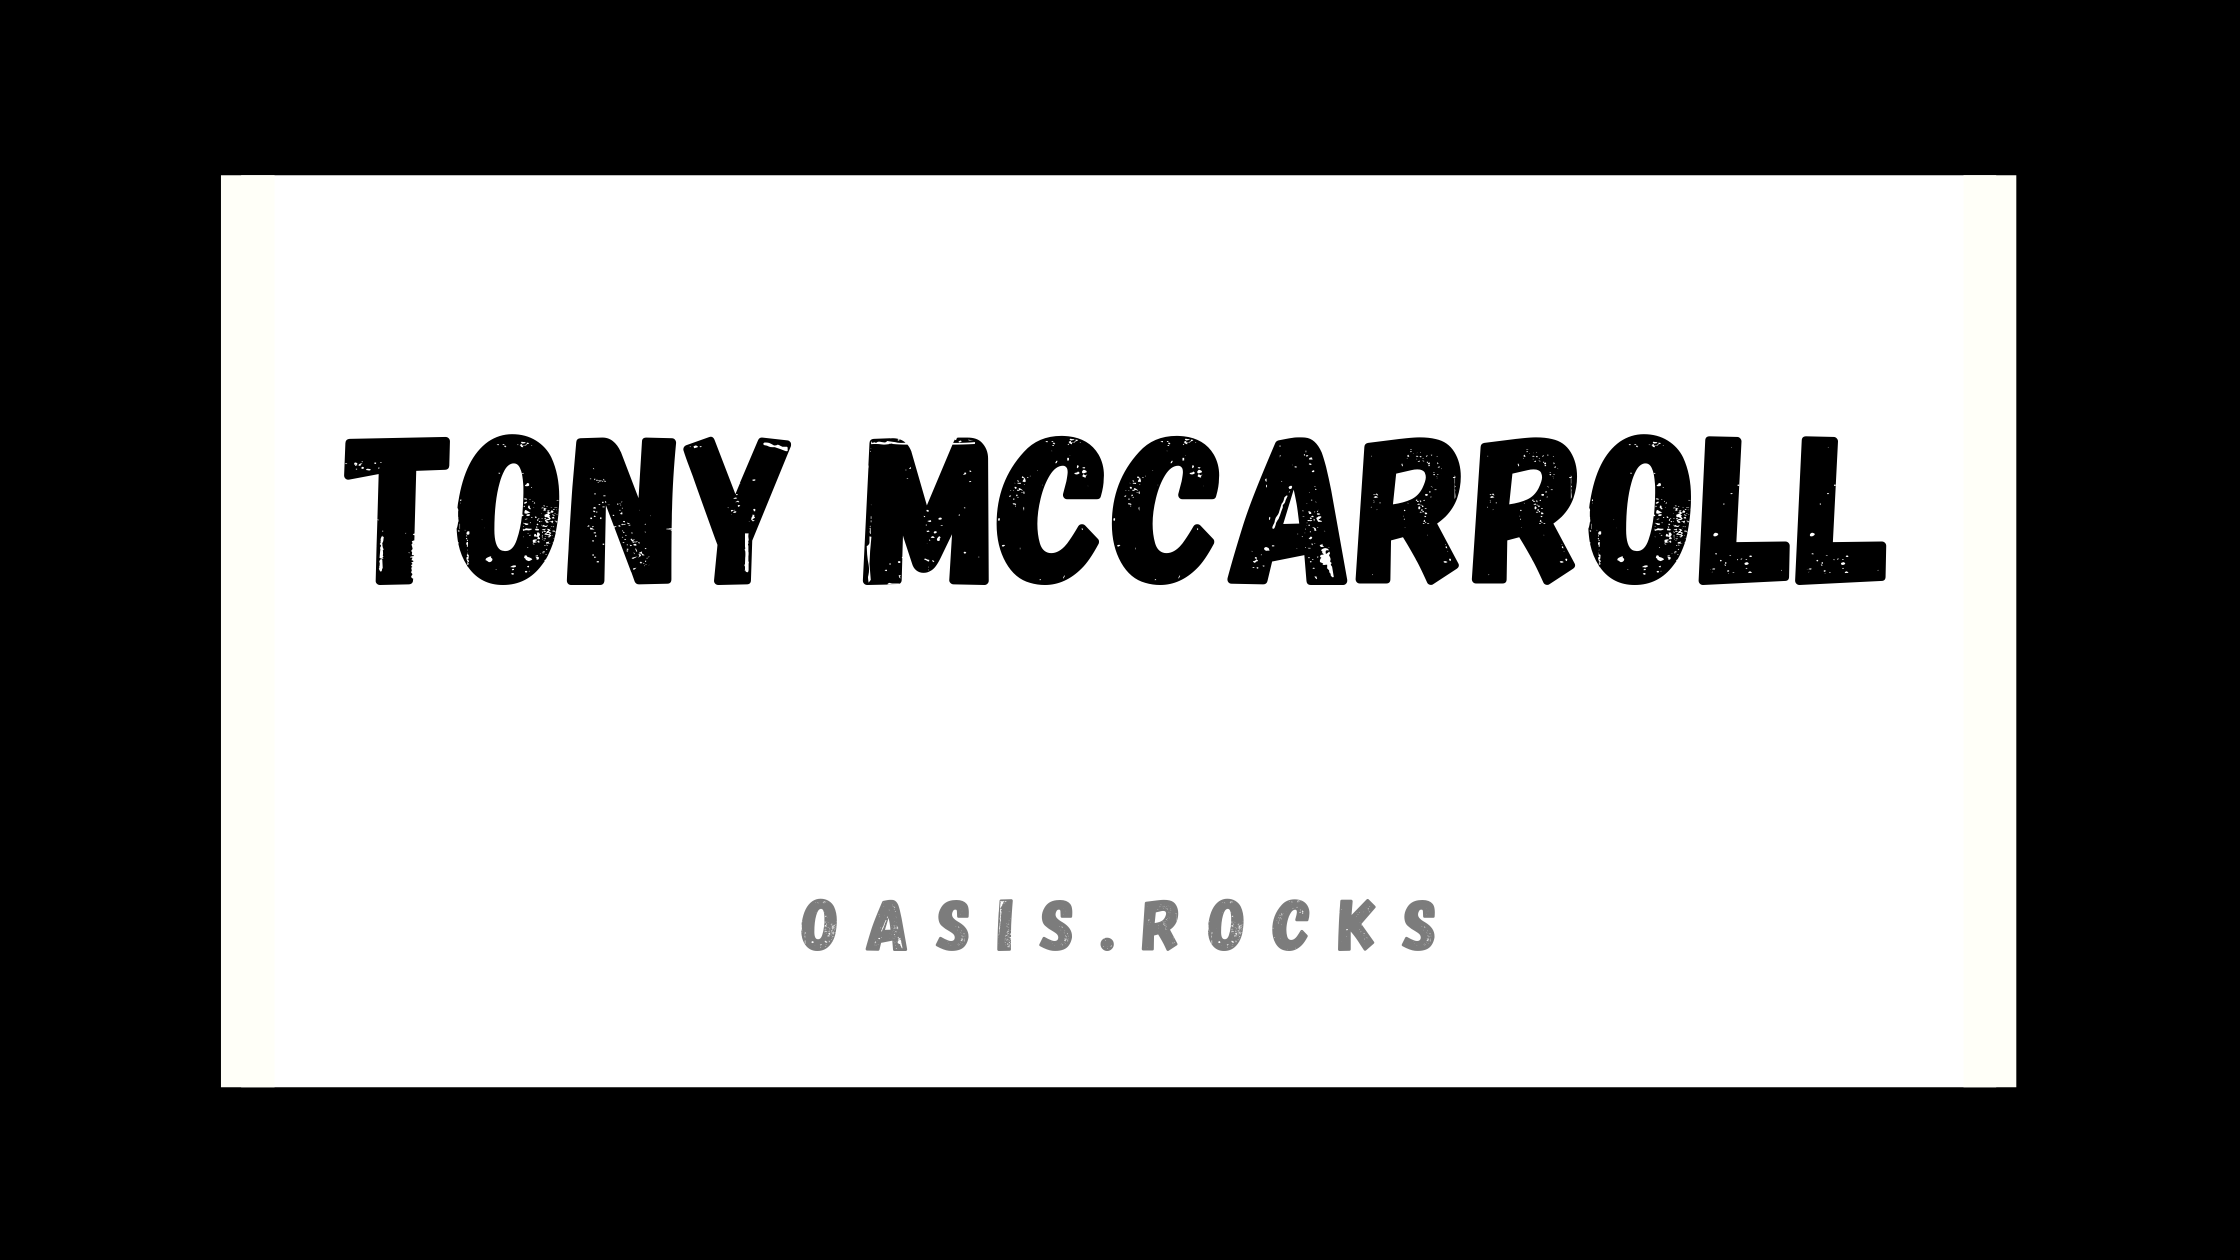 Tony McCarroll war ein Band-Mitglied von Oasis.